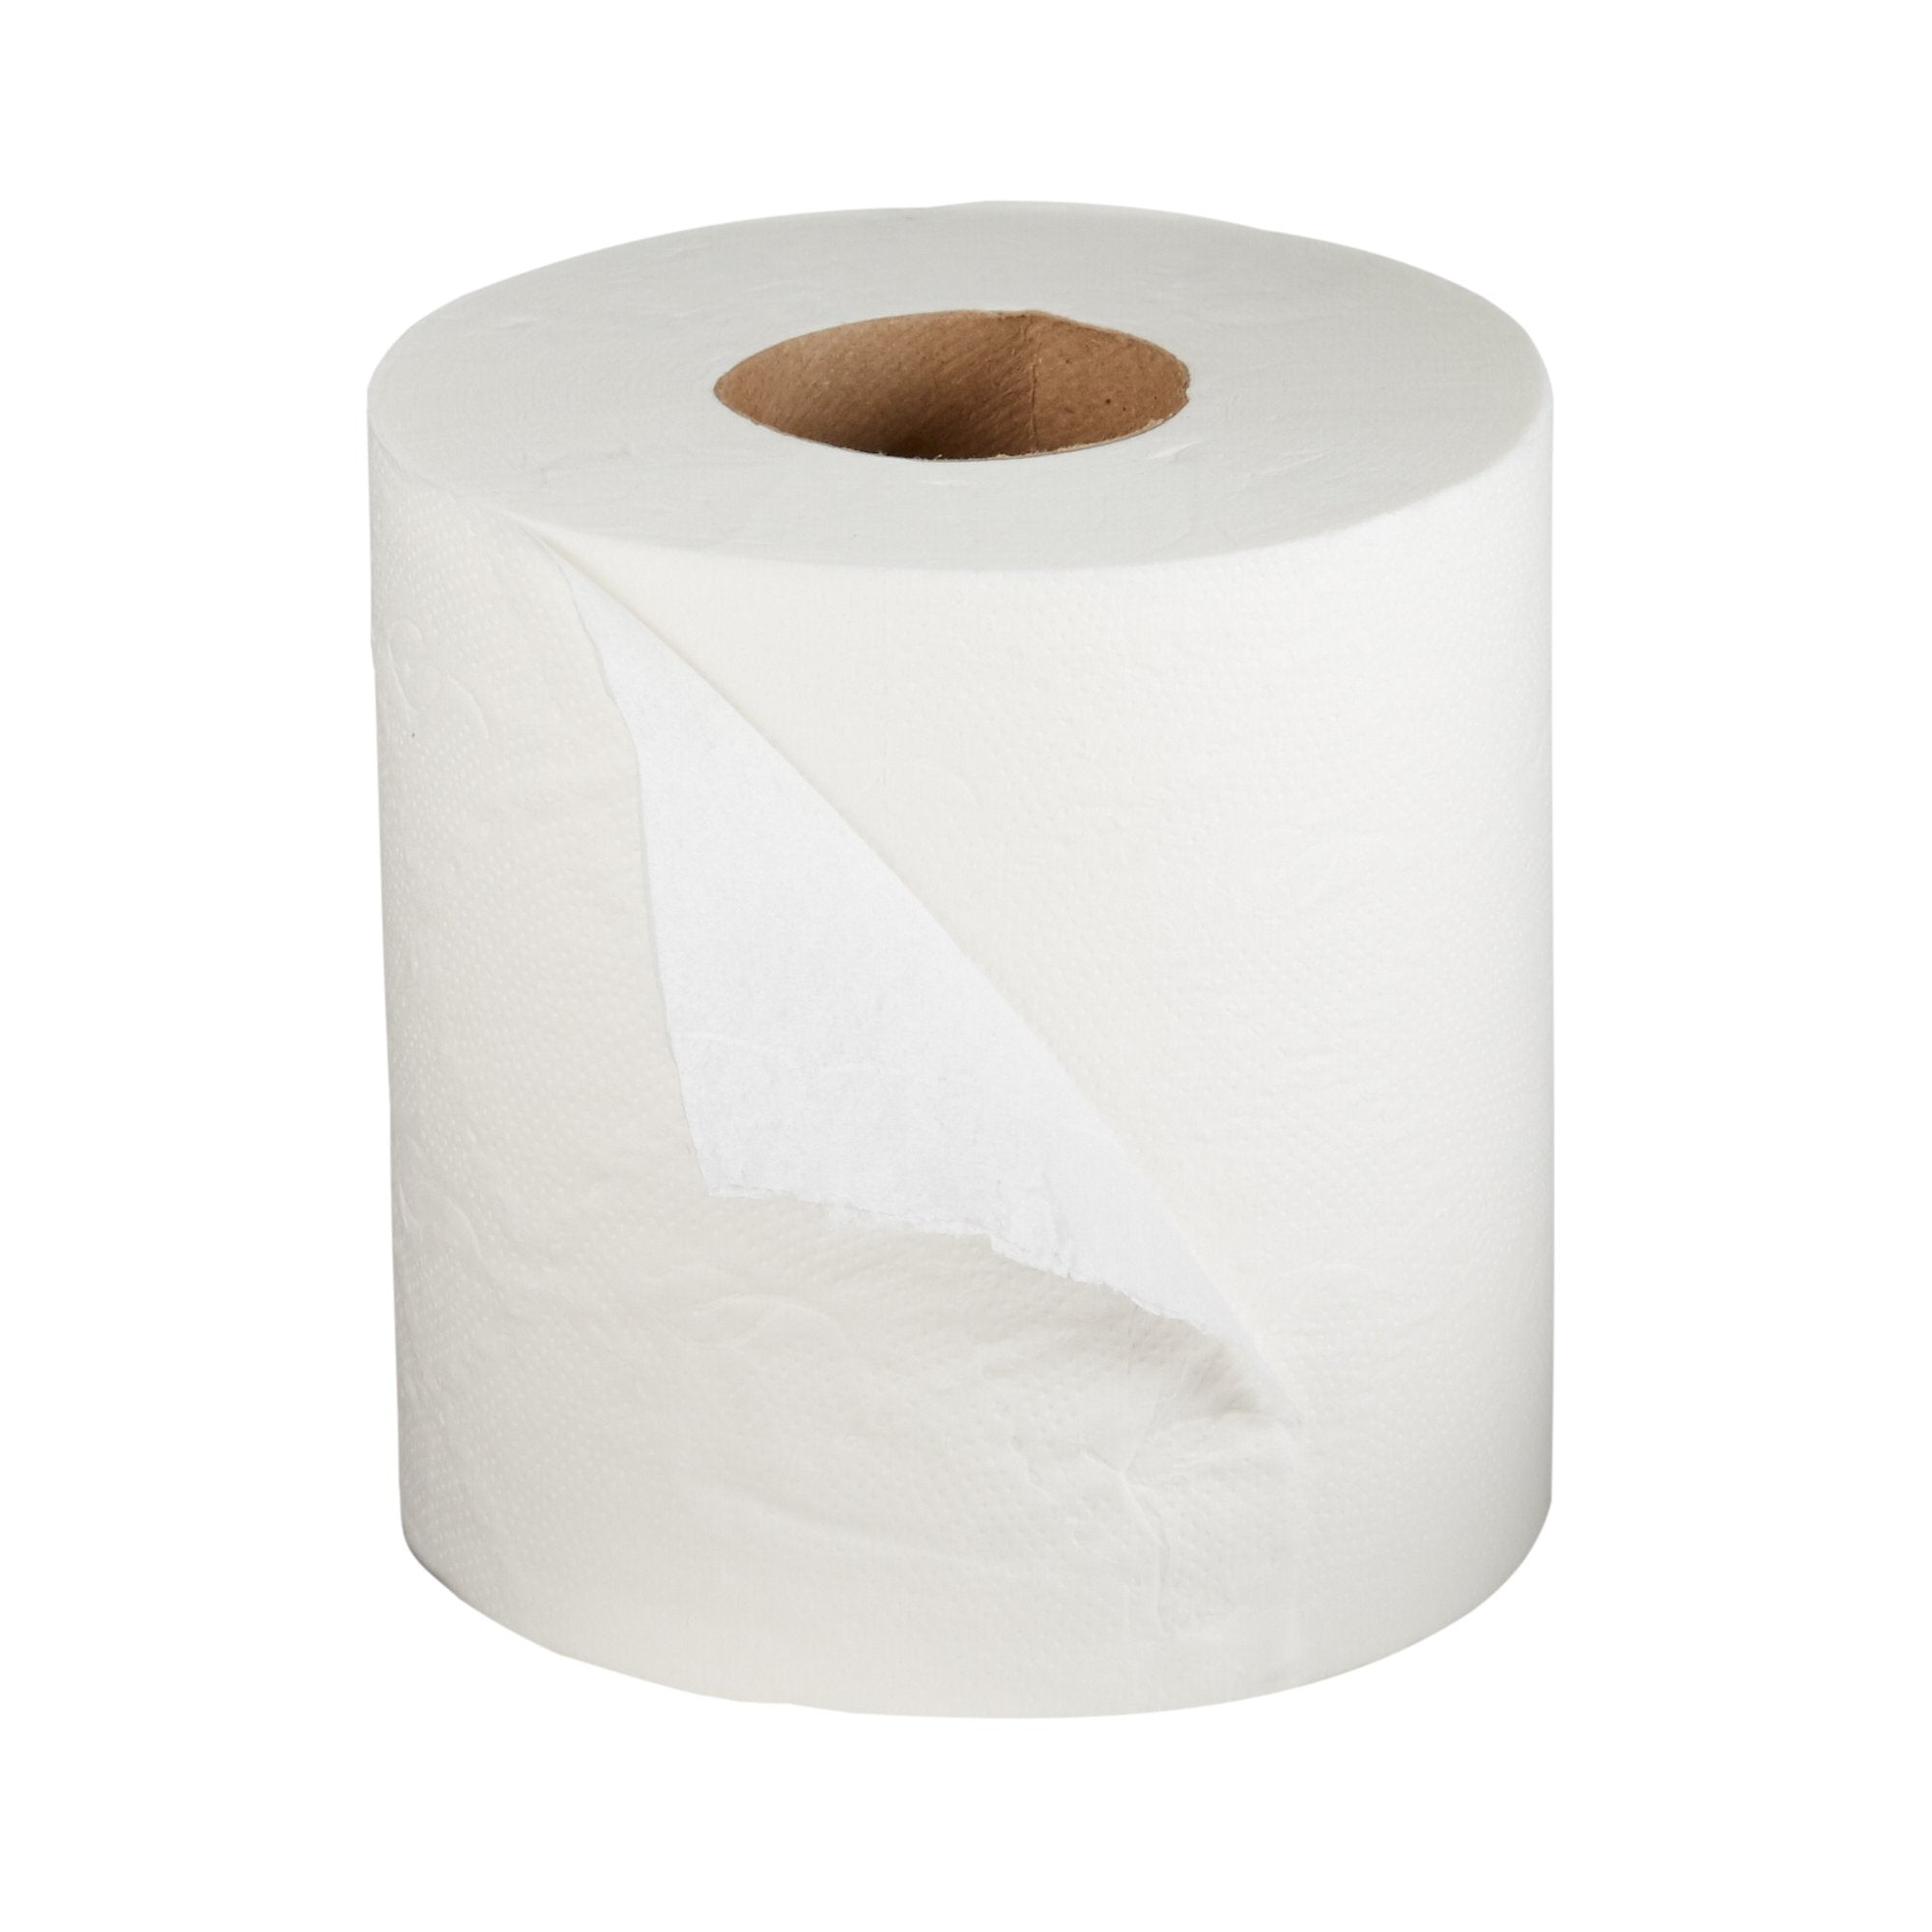 McKesson Premium Toilet Tissue